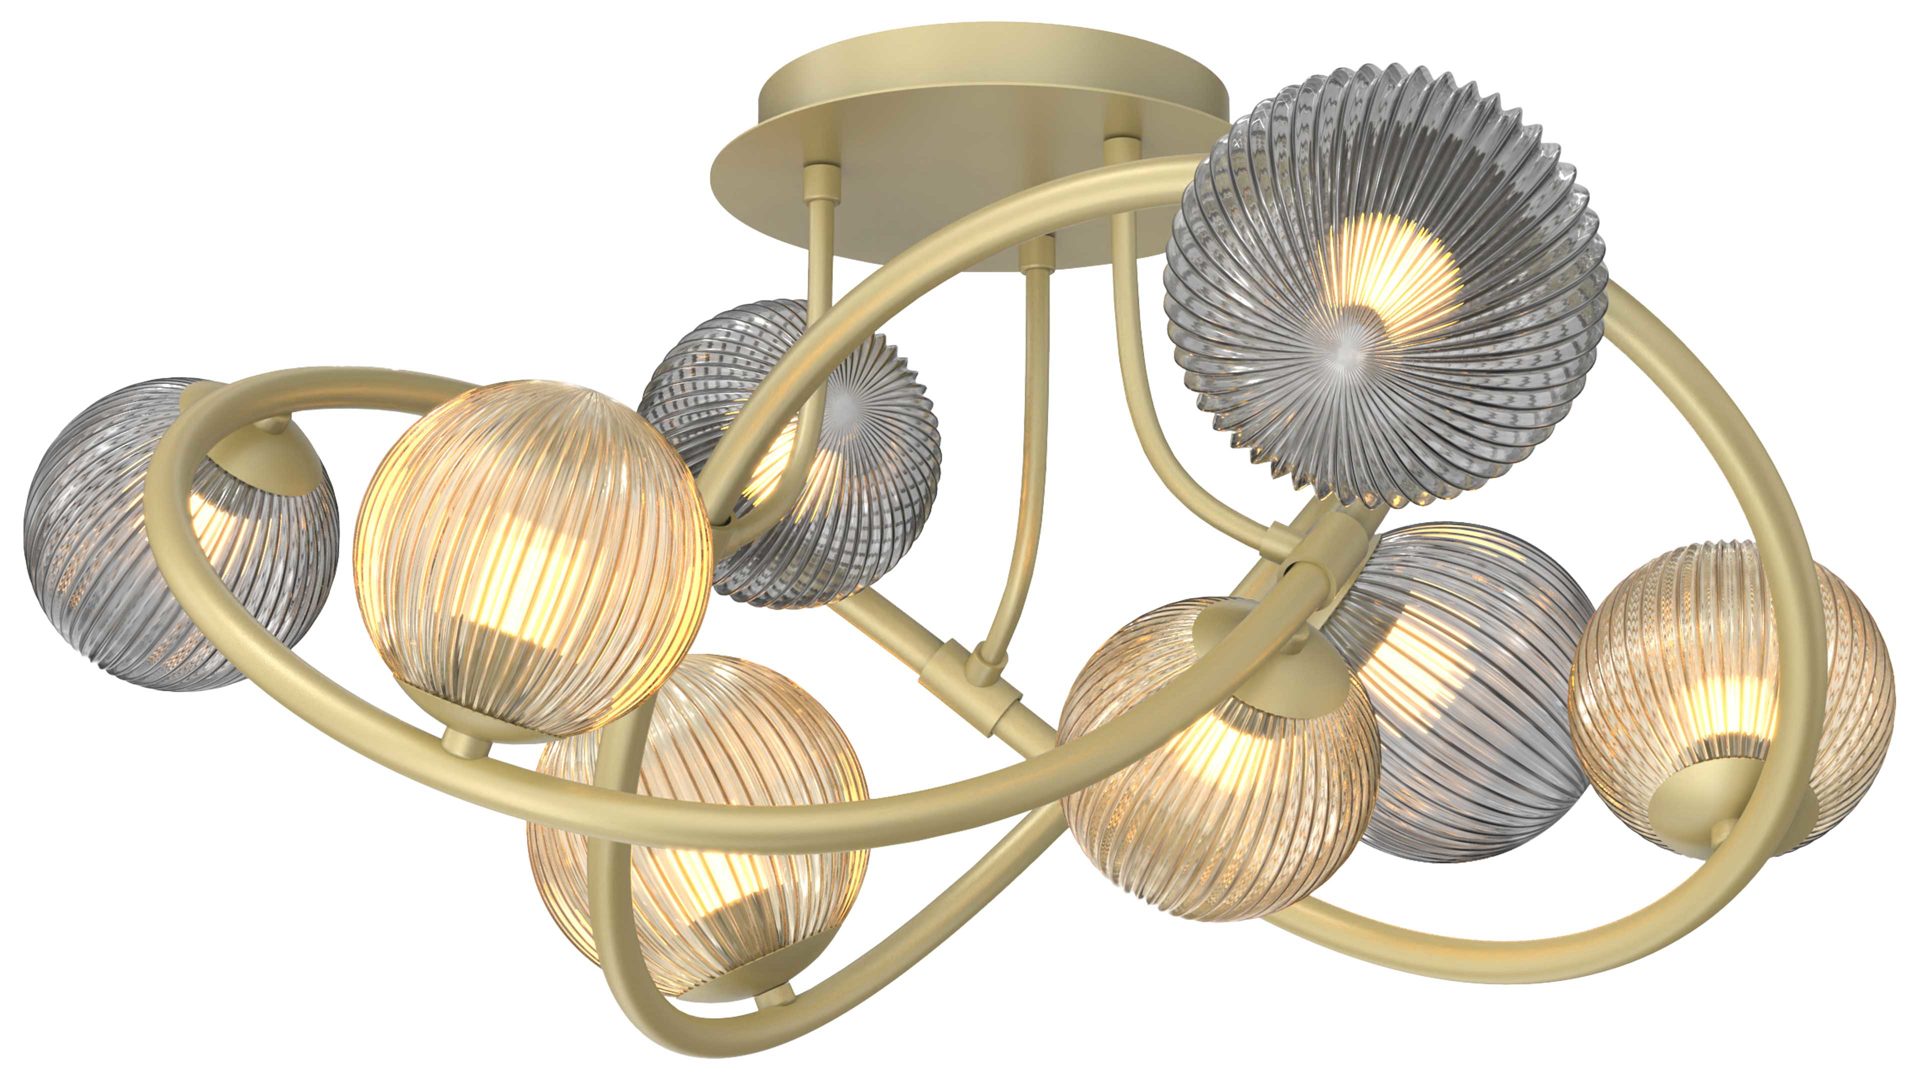 Deckenleuchte Global technics aus Glas in Gold Leuchten Serie Metz - Deckenlampe Rauch, Bernstein & Gold - Durchmesser ca. 64 cm